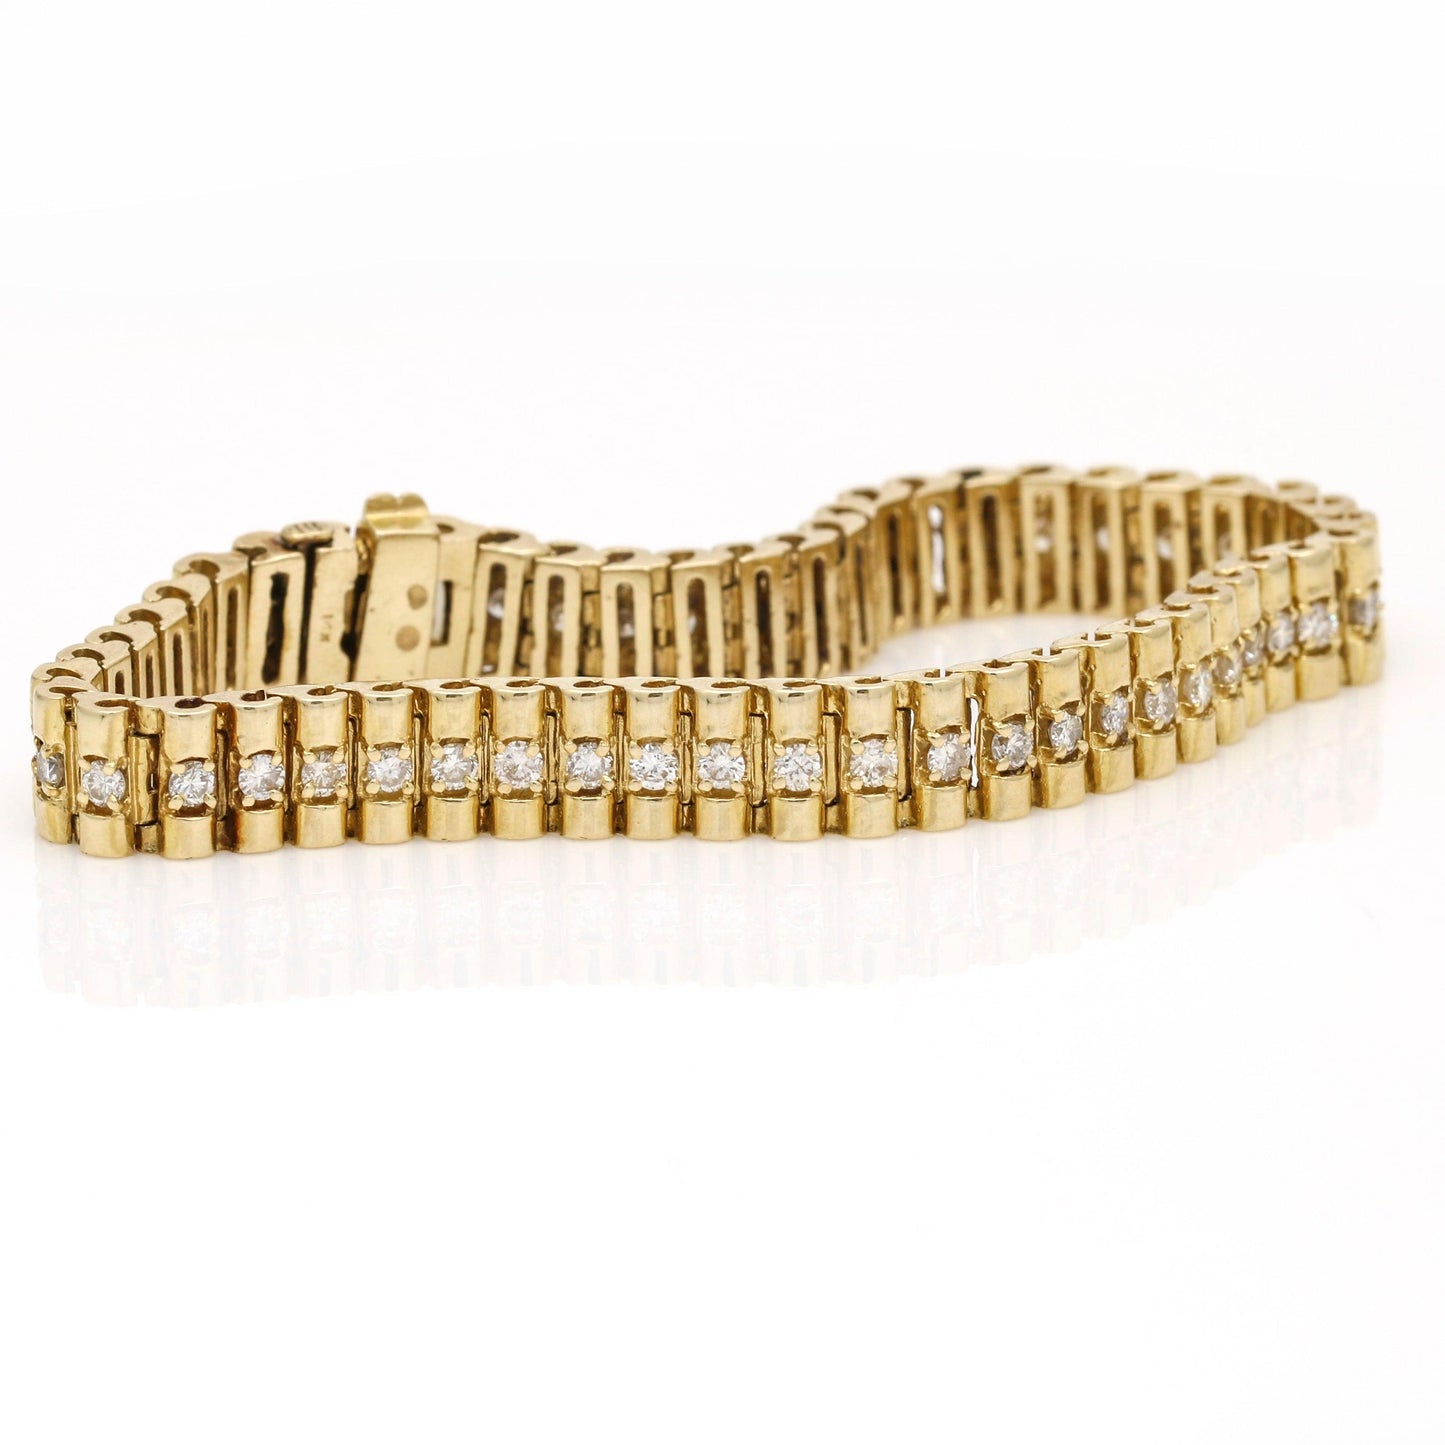 Vintage Diamond Cylinder Barrel Link Bracelet in 14k Yellow Gold - 31 Jewels Inc.